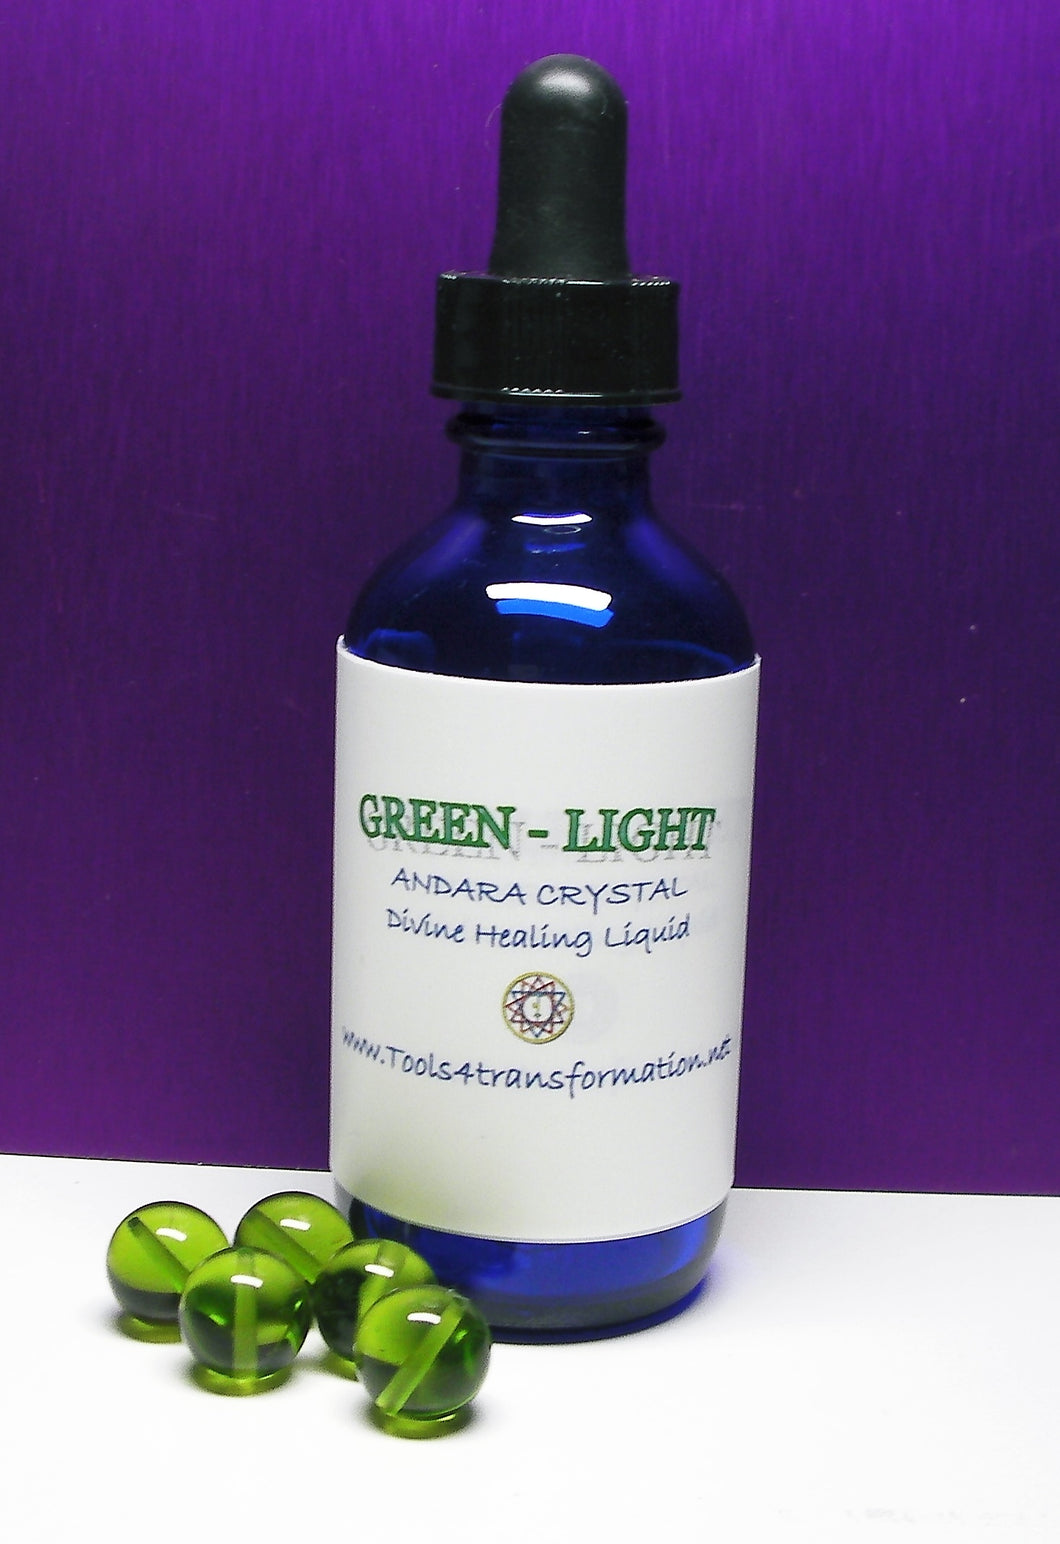 Green (Light) Andara Crystal Liquid - Tools4transformation